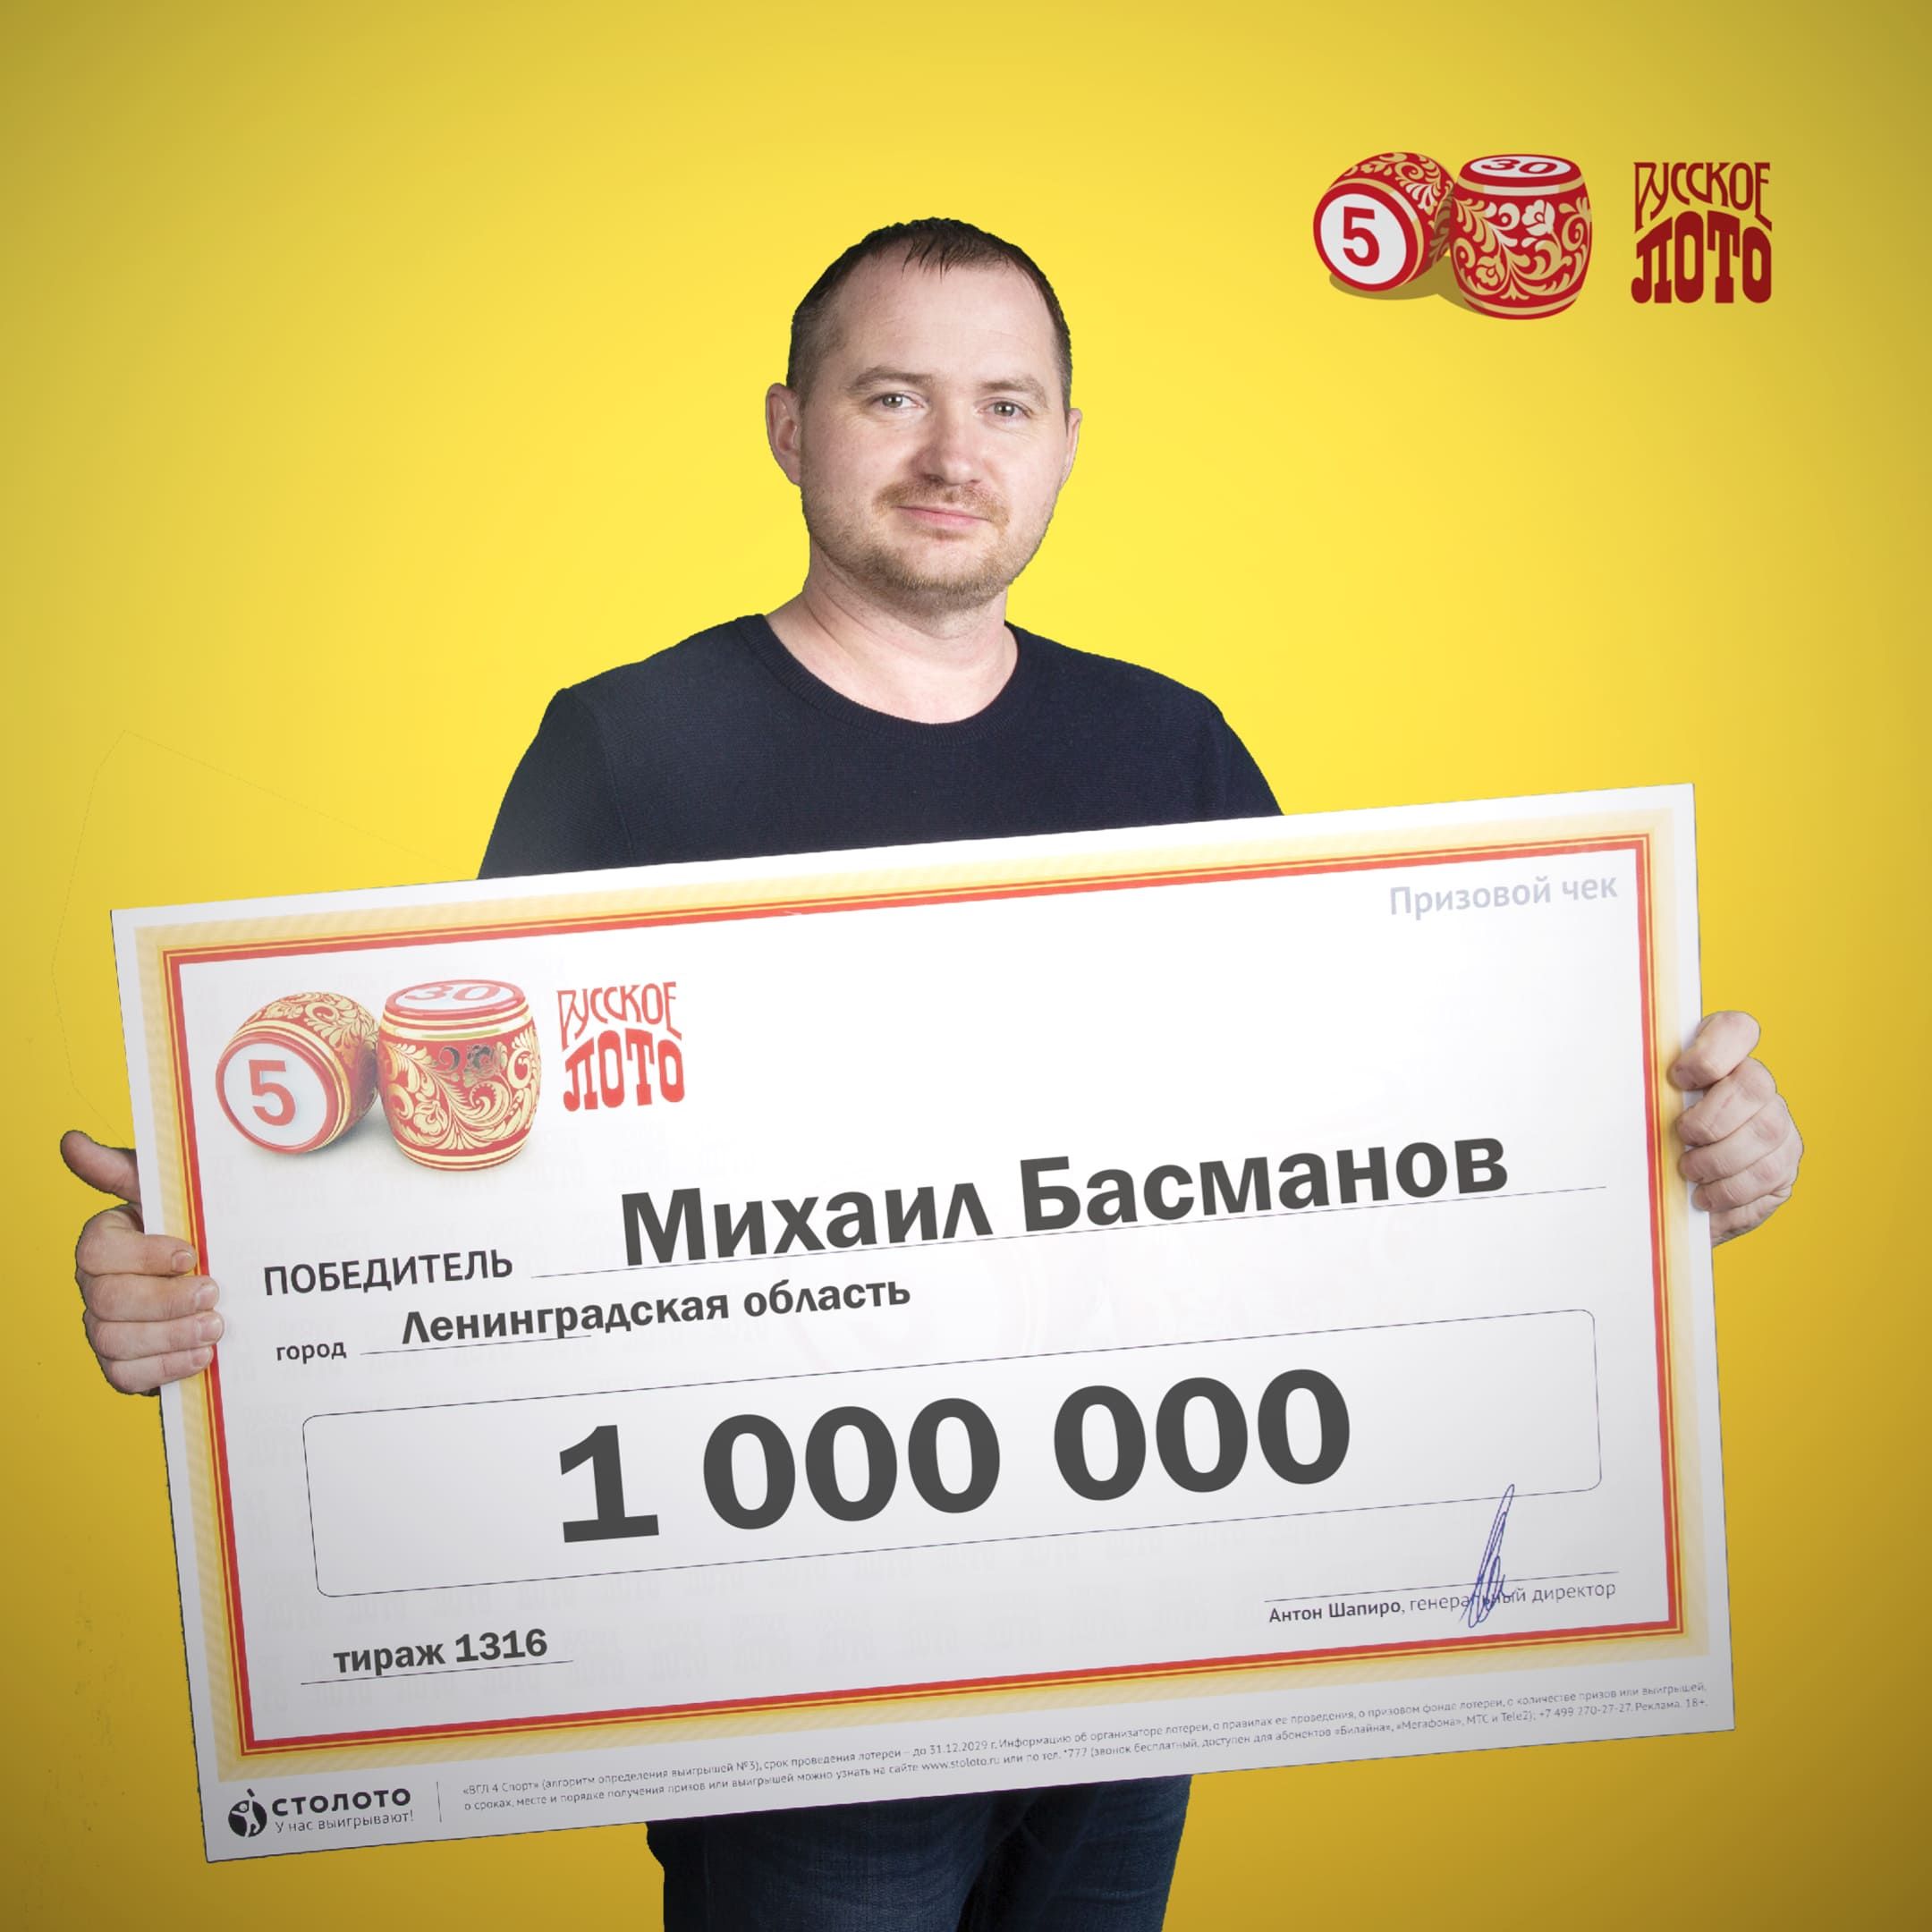 Михаил Басманов, победитель «Русского лото»